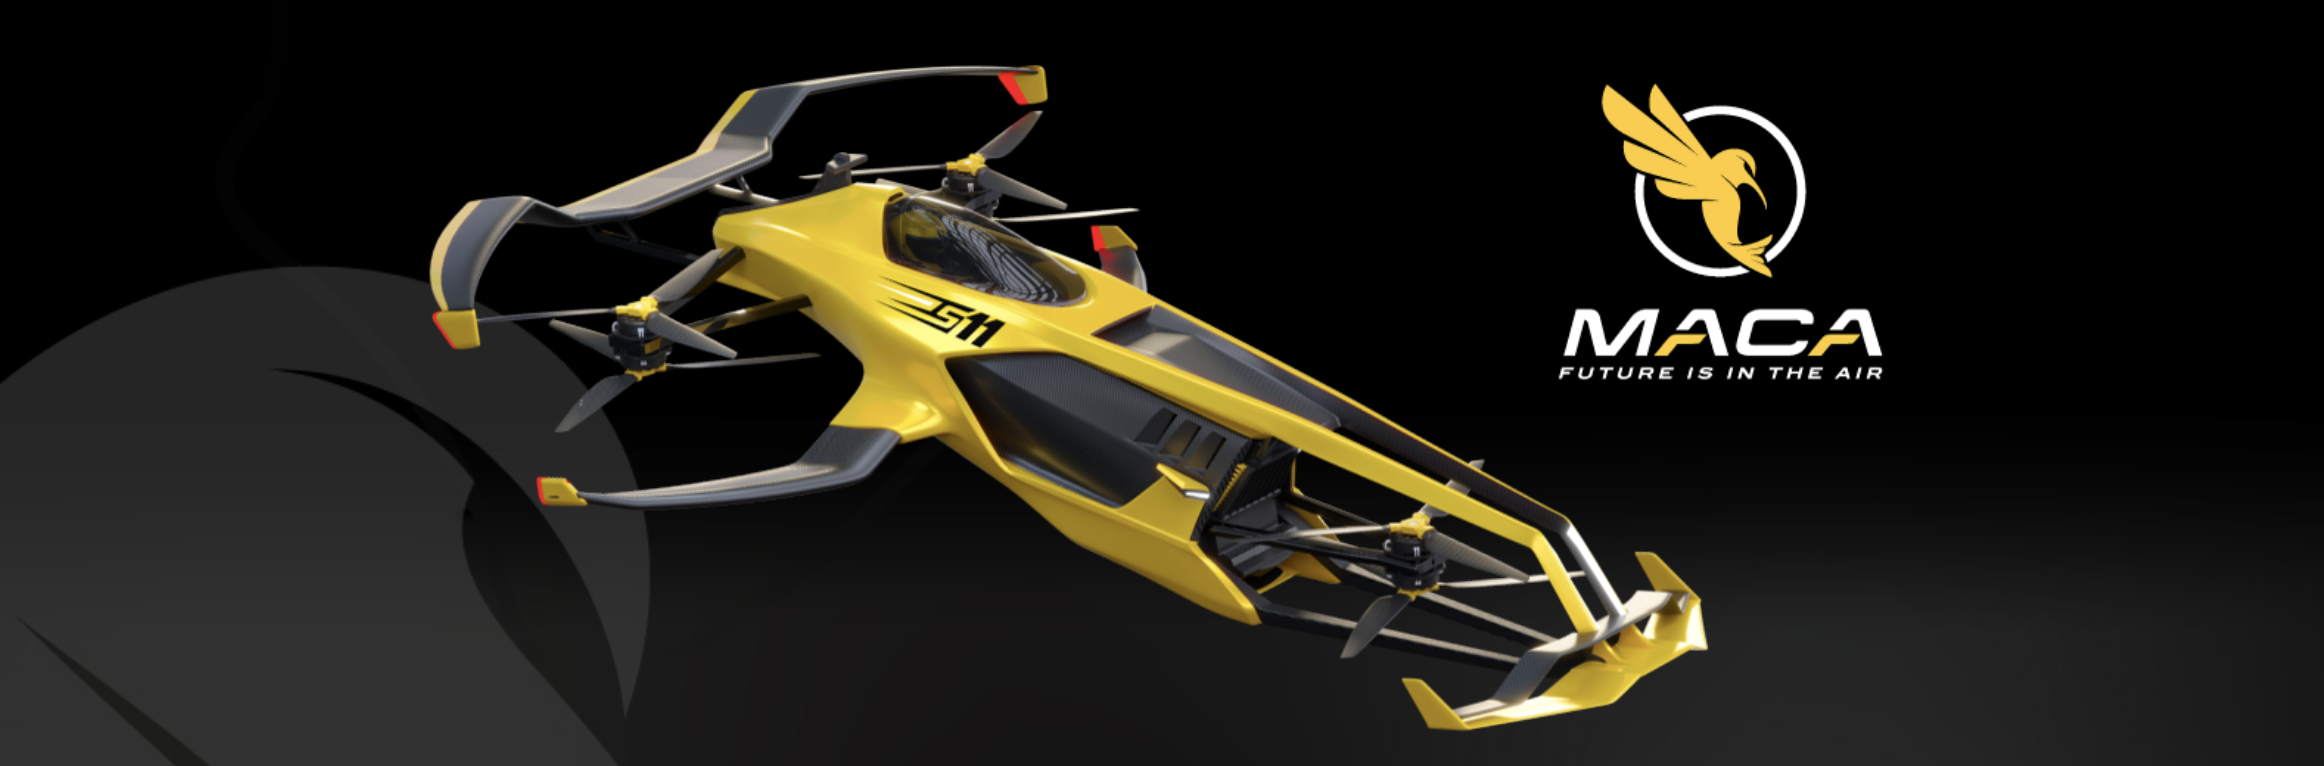 水素燃料の空飛ぶレーシングカー「MACA S11」